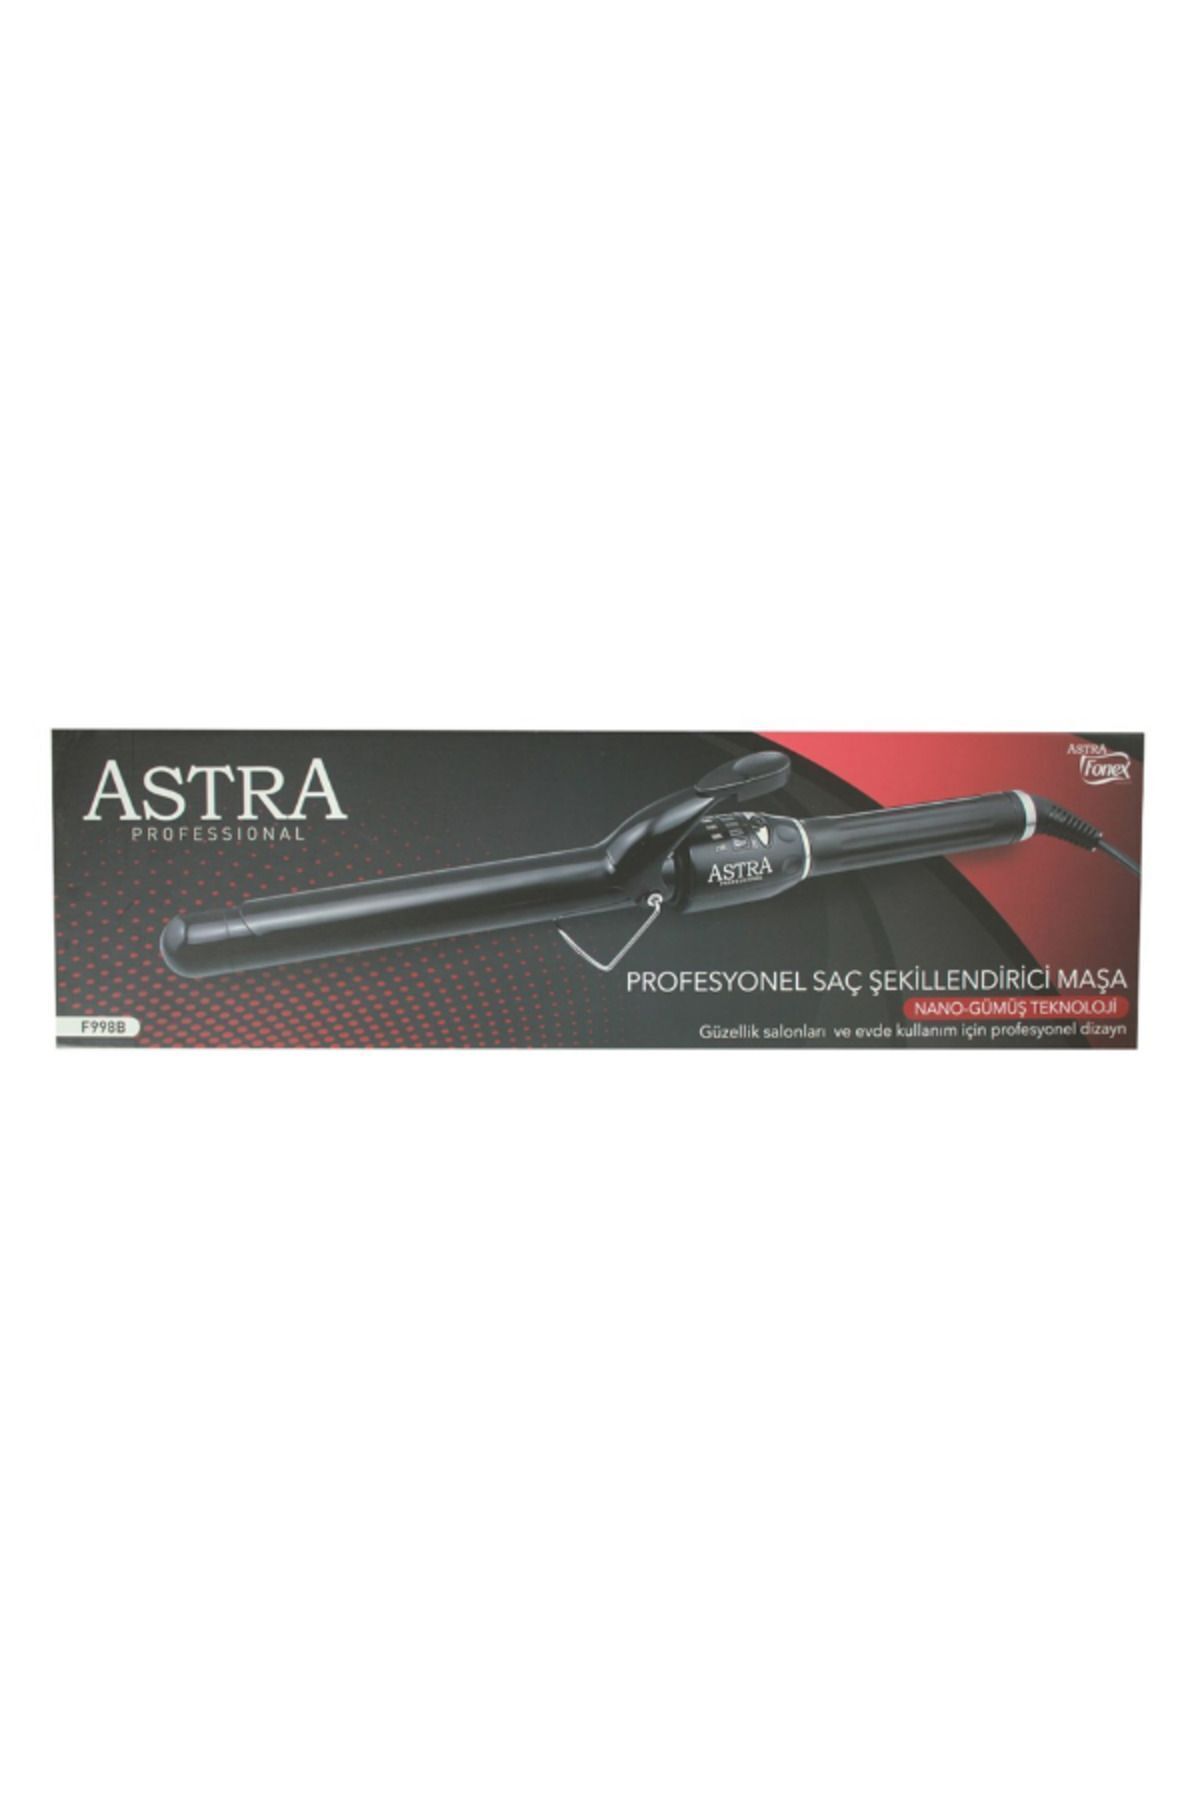 Astra Professional Saç Şekillendirici Maşa F998B 28mm / Soğuk Uç - 110 Watt